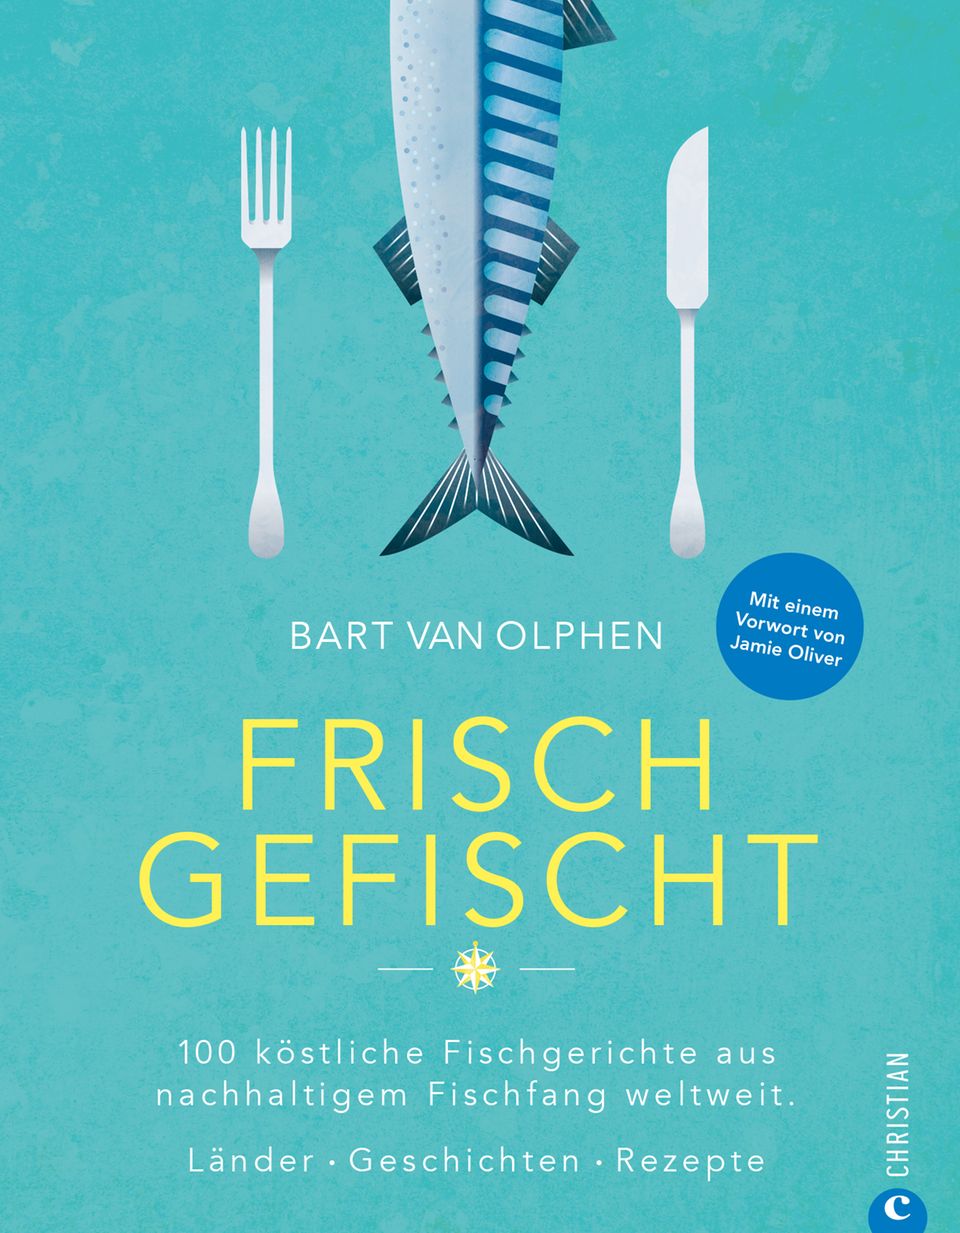 Mehr zum Thema nachhaltigen Fischfang in : "Frisch gefischt" von Bart van Olphen. Christian Verlag. 400 Seiten. 39,99 Euro.